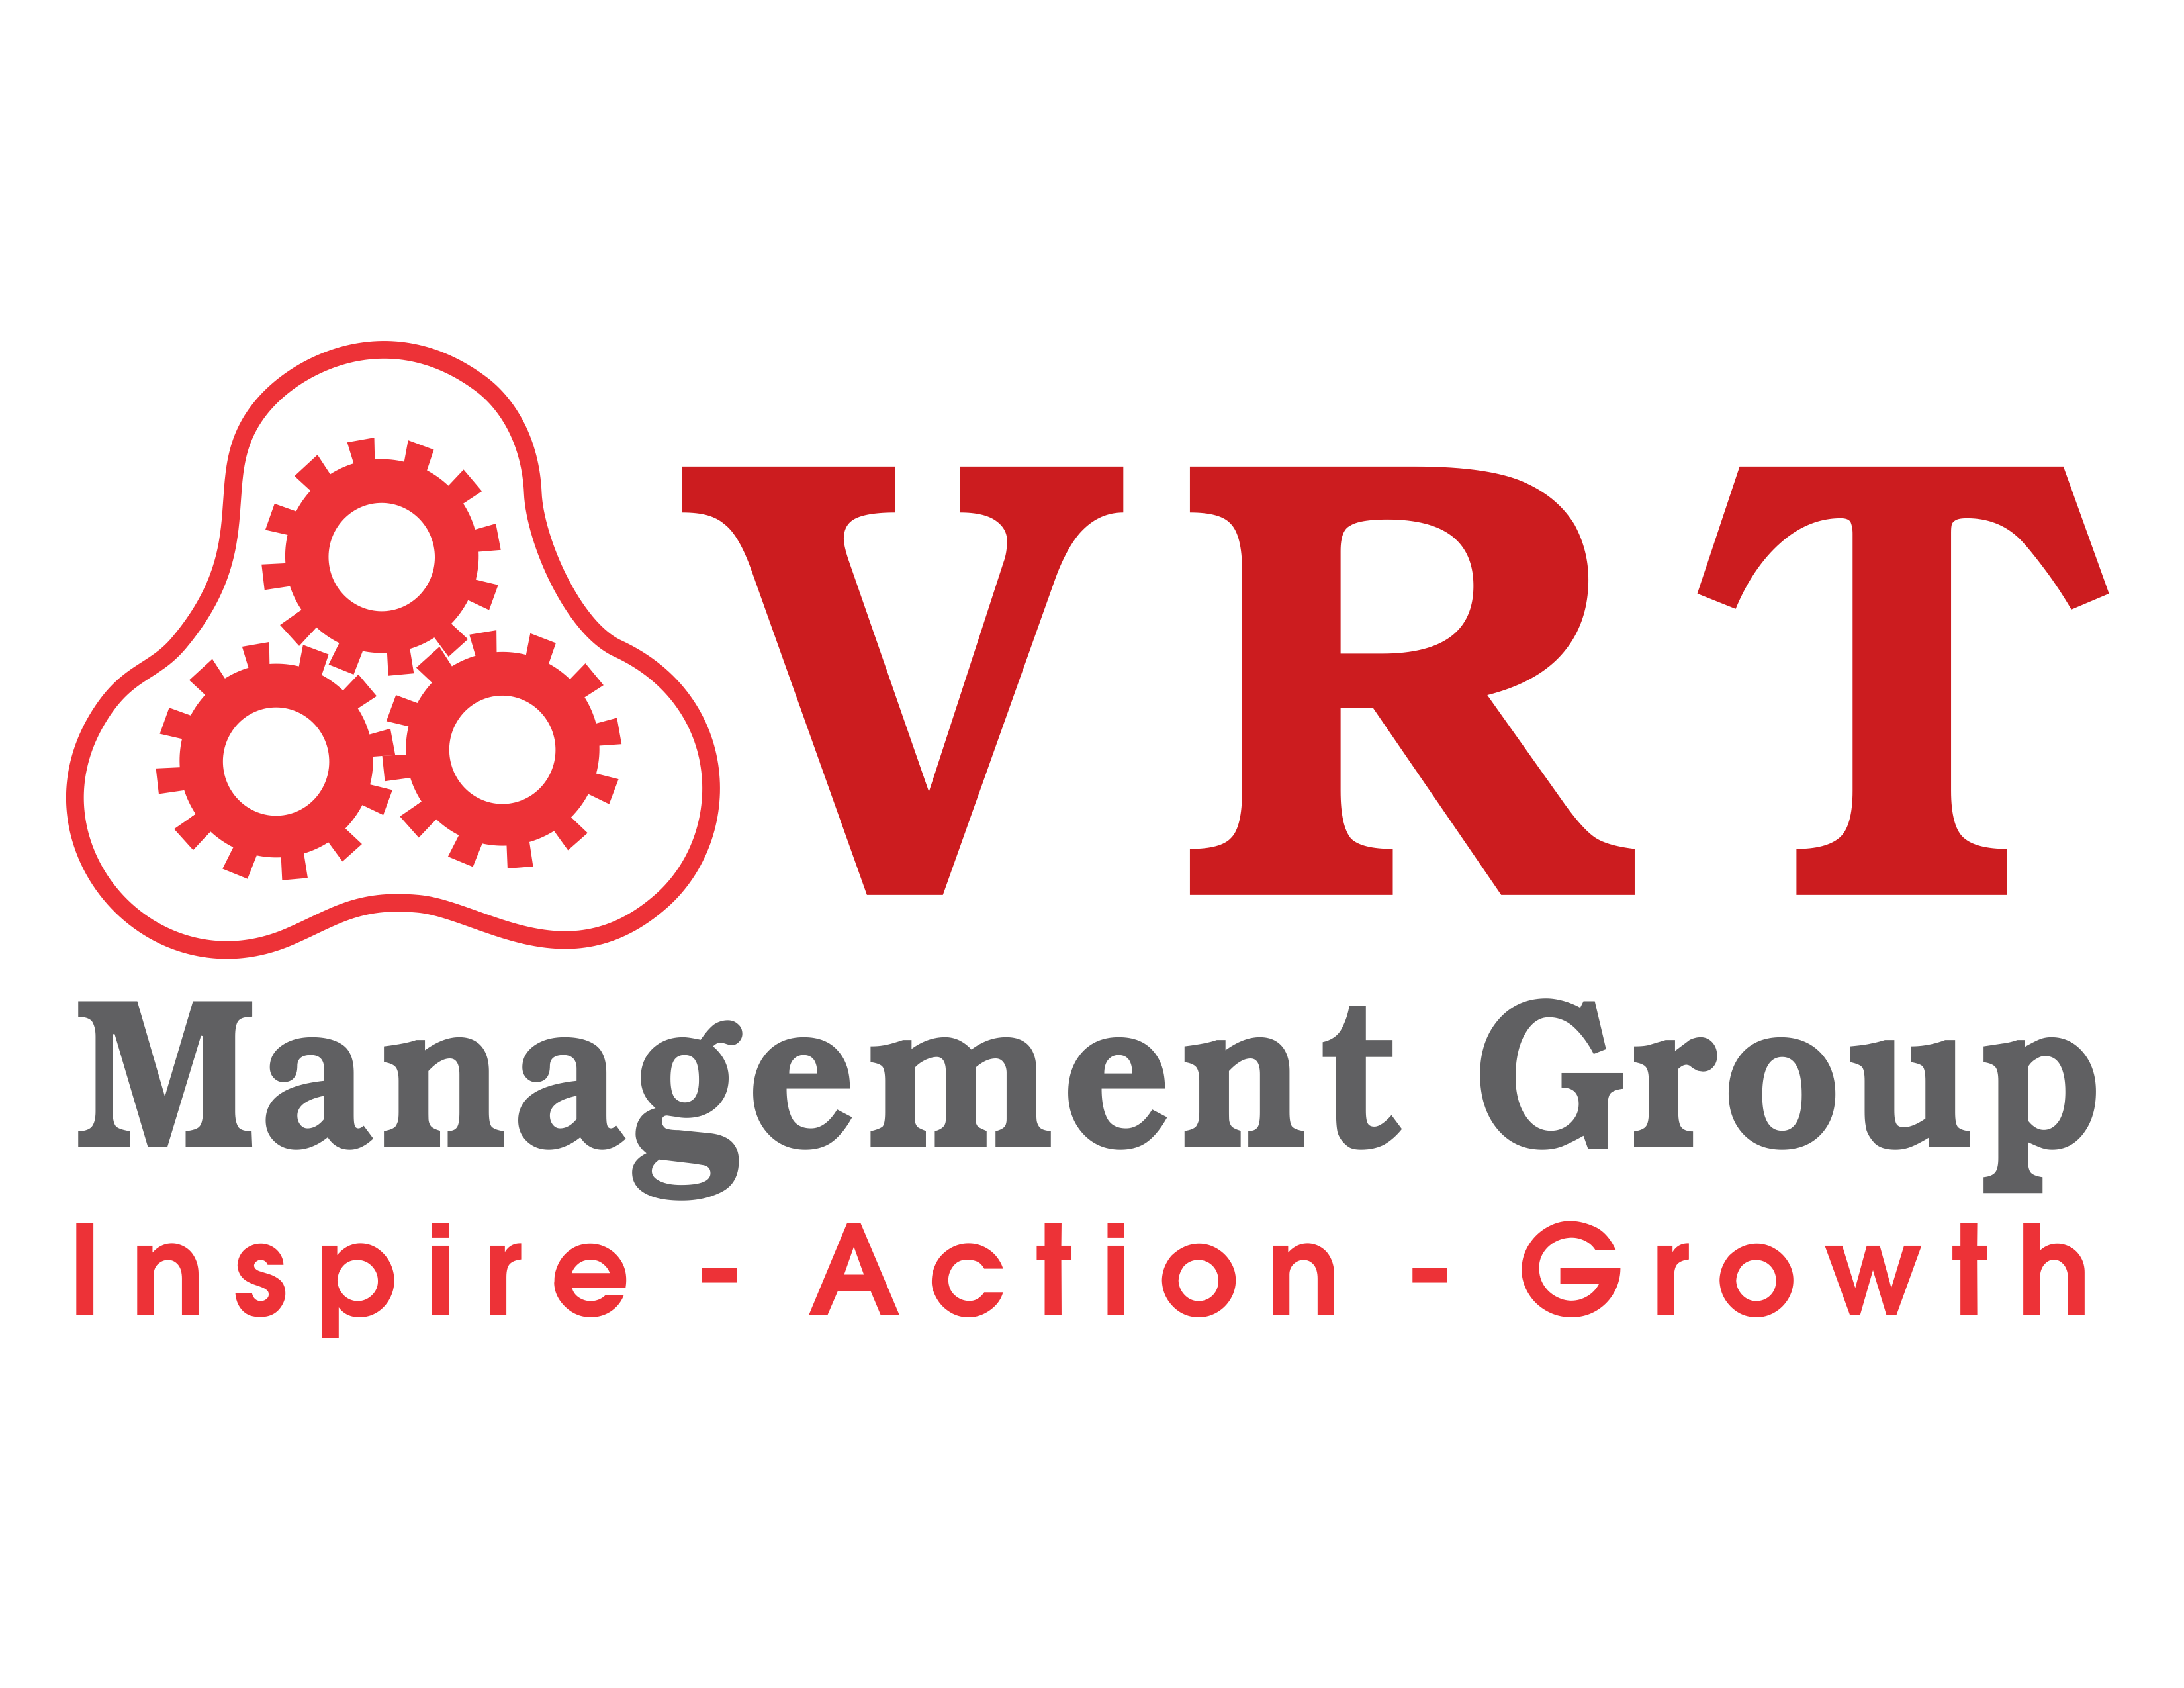 VRT Management Group